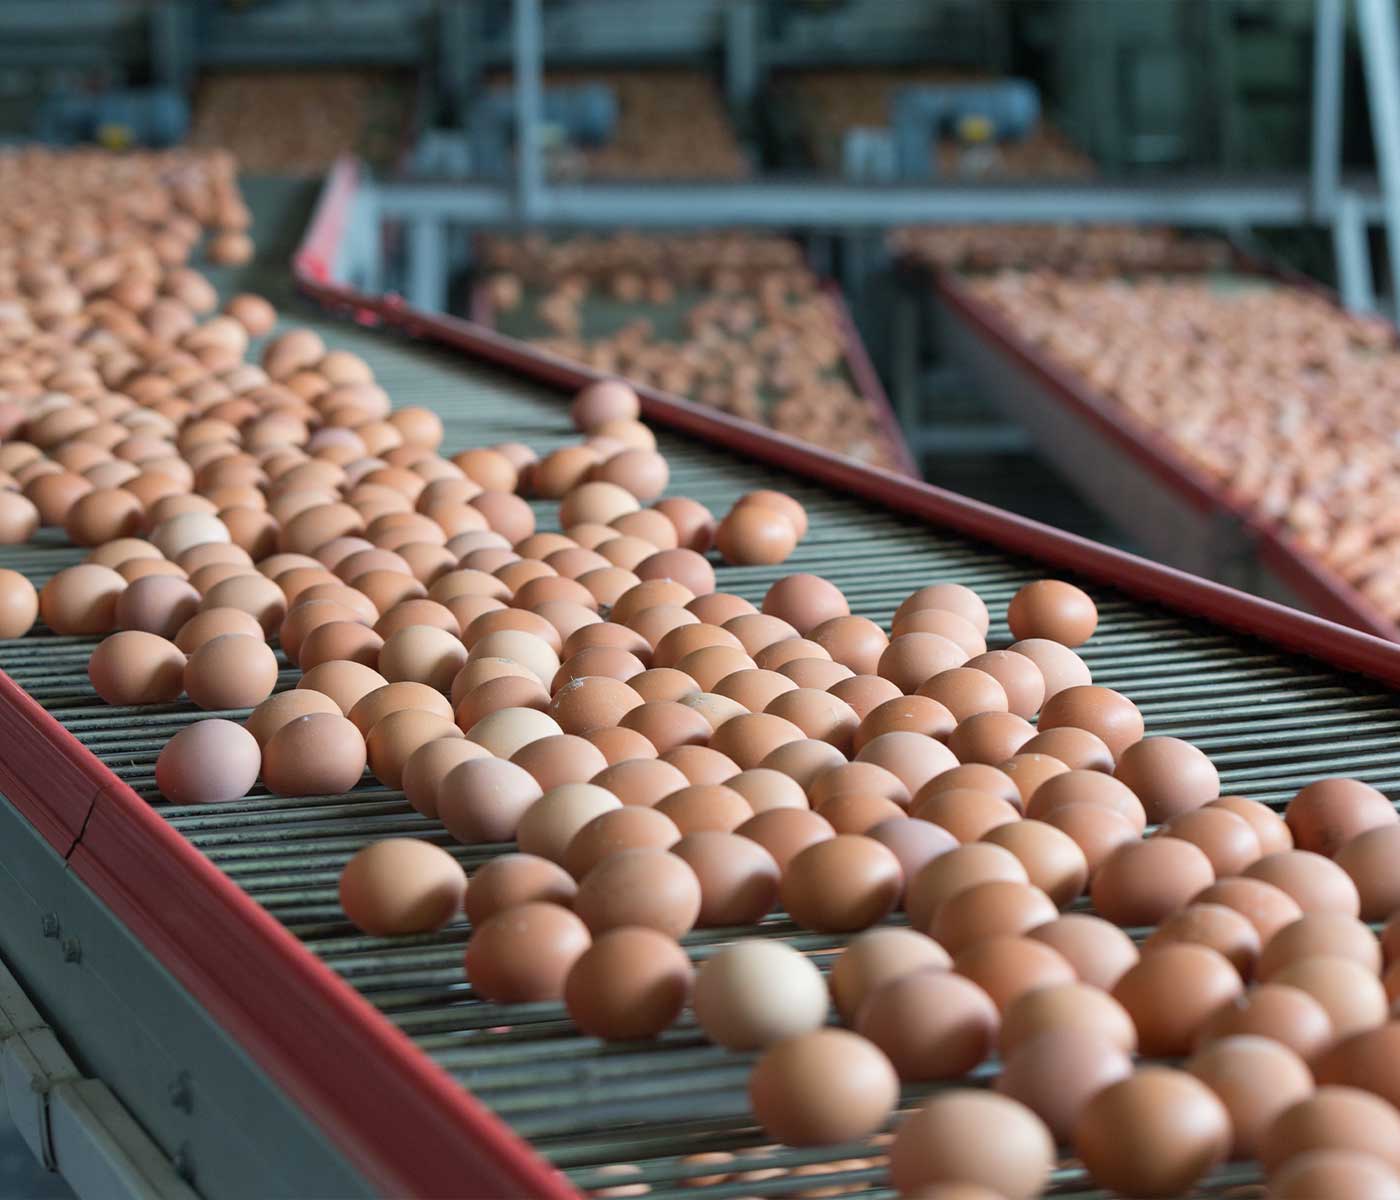 La importancia del i+D debido a la demanda en empresas de huevos